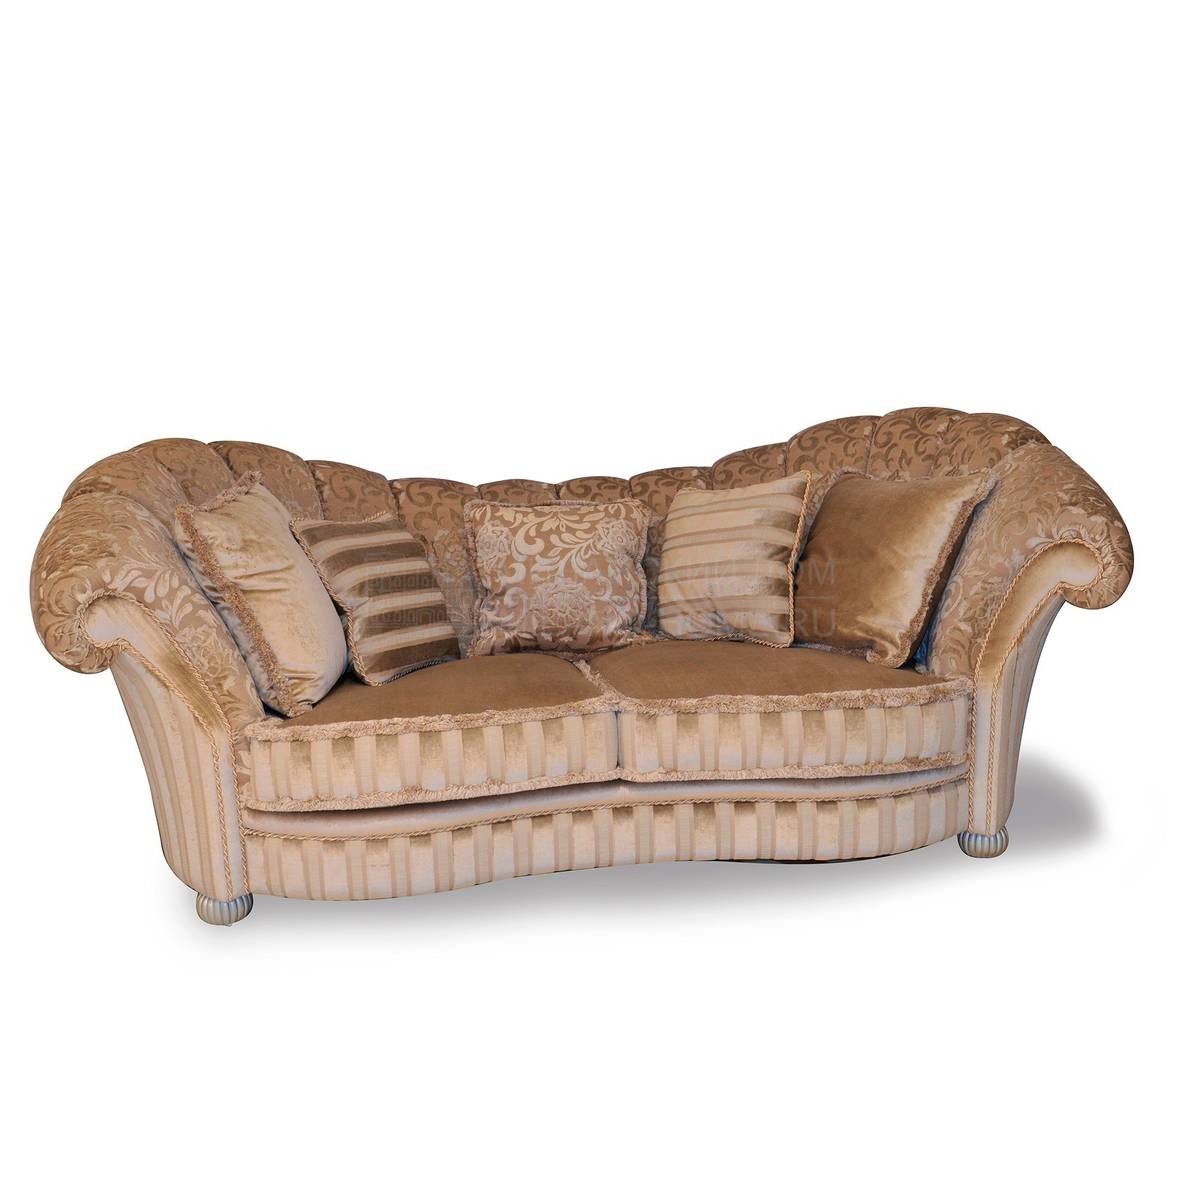 Прямой диван The Upholstery/D424 из Италии фабрики FRANCESCO MOLON